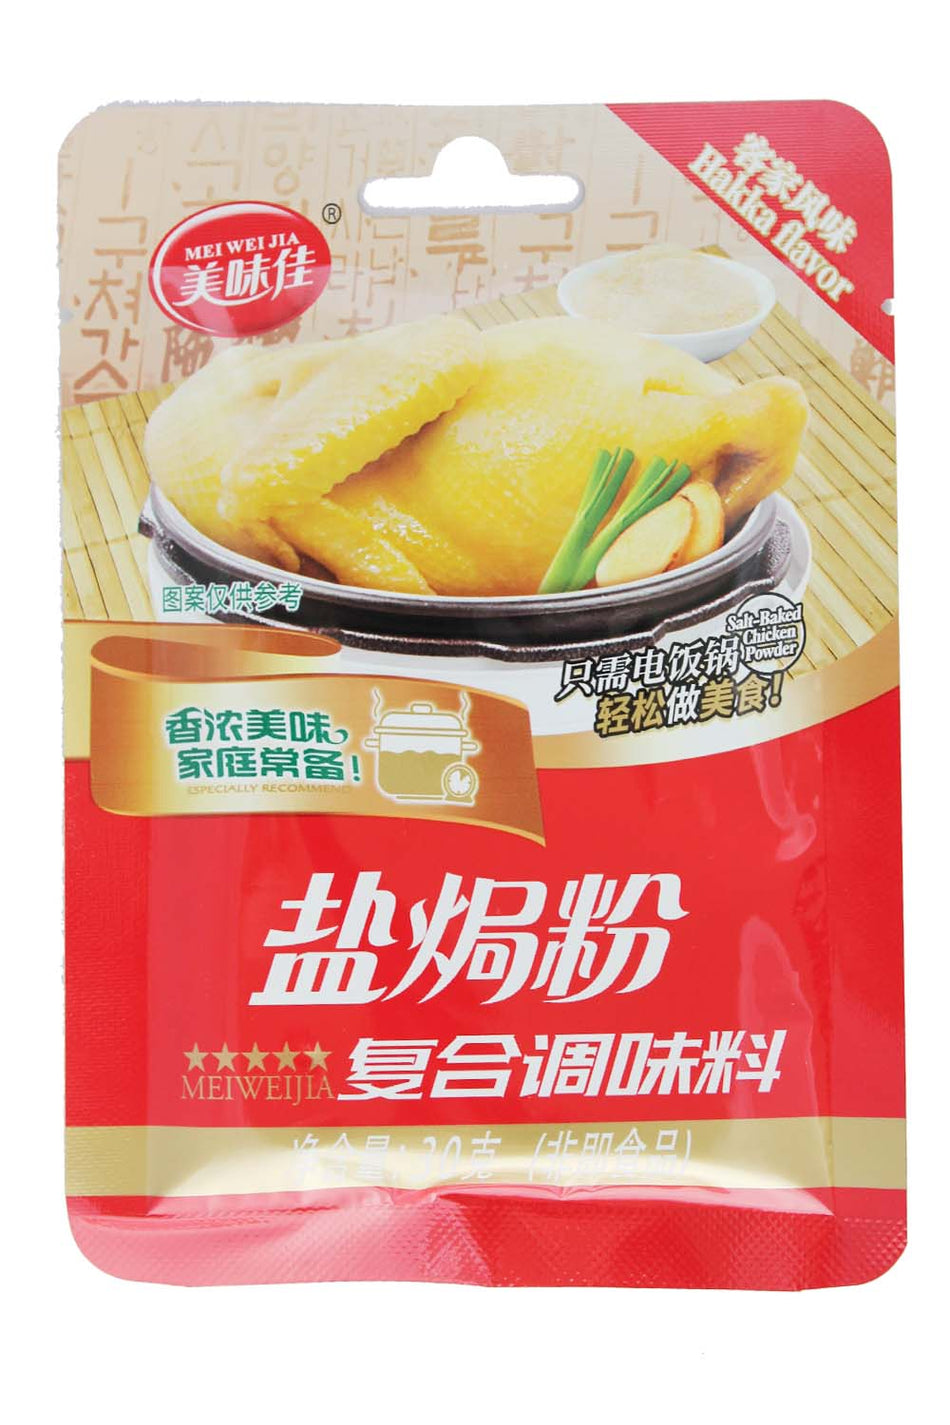 Mei Wei Jia Salt-baked chicken Powder